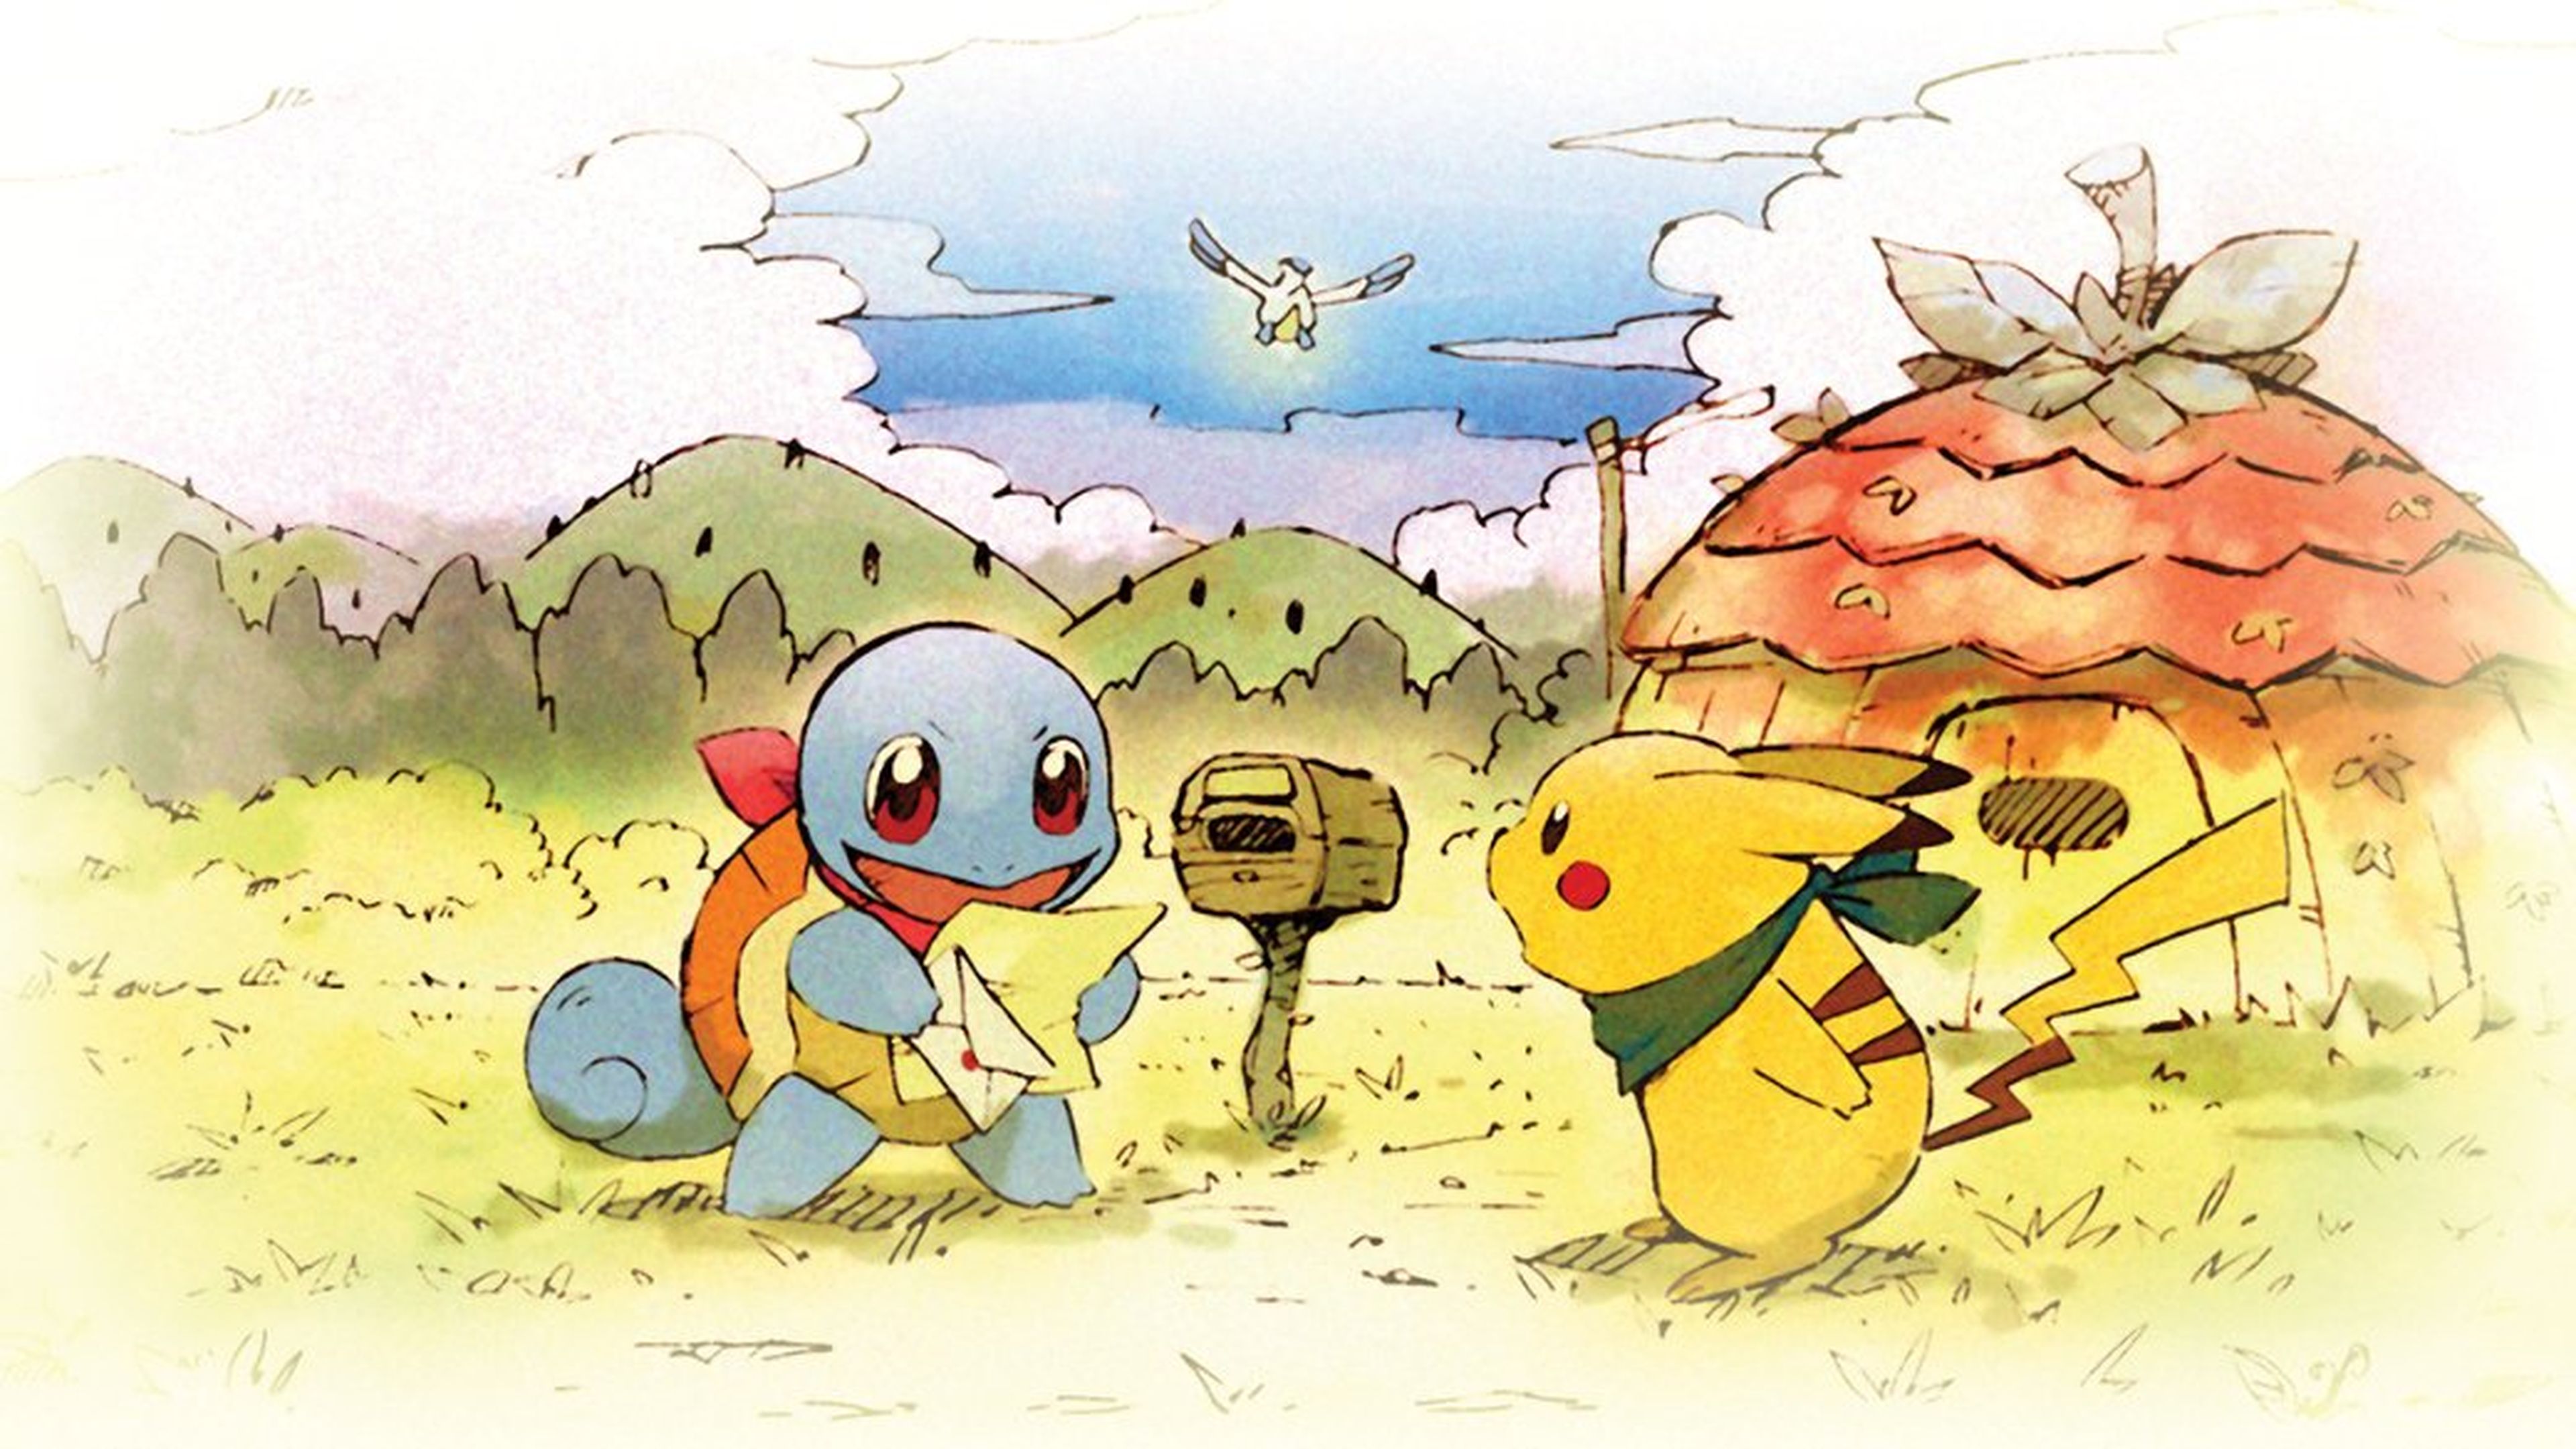 Gangas videogames - 😎🔥¡YA DISPONIBLE! Pokémon Mundo Misterioso: Equipo de  Rescate DX😎🔥 Disponible para NINTENDO SWITCH😎 A SOLO Q550.00😎🔥  Enviamos a domicilio a TODO EL PAÍS🚛🚛 Puedes ordenarlo en cualquiera de  nuestras